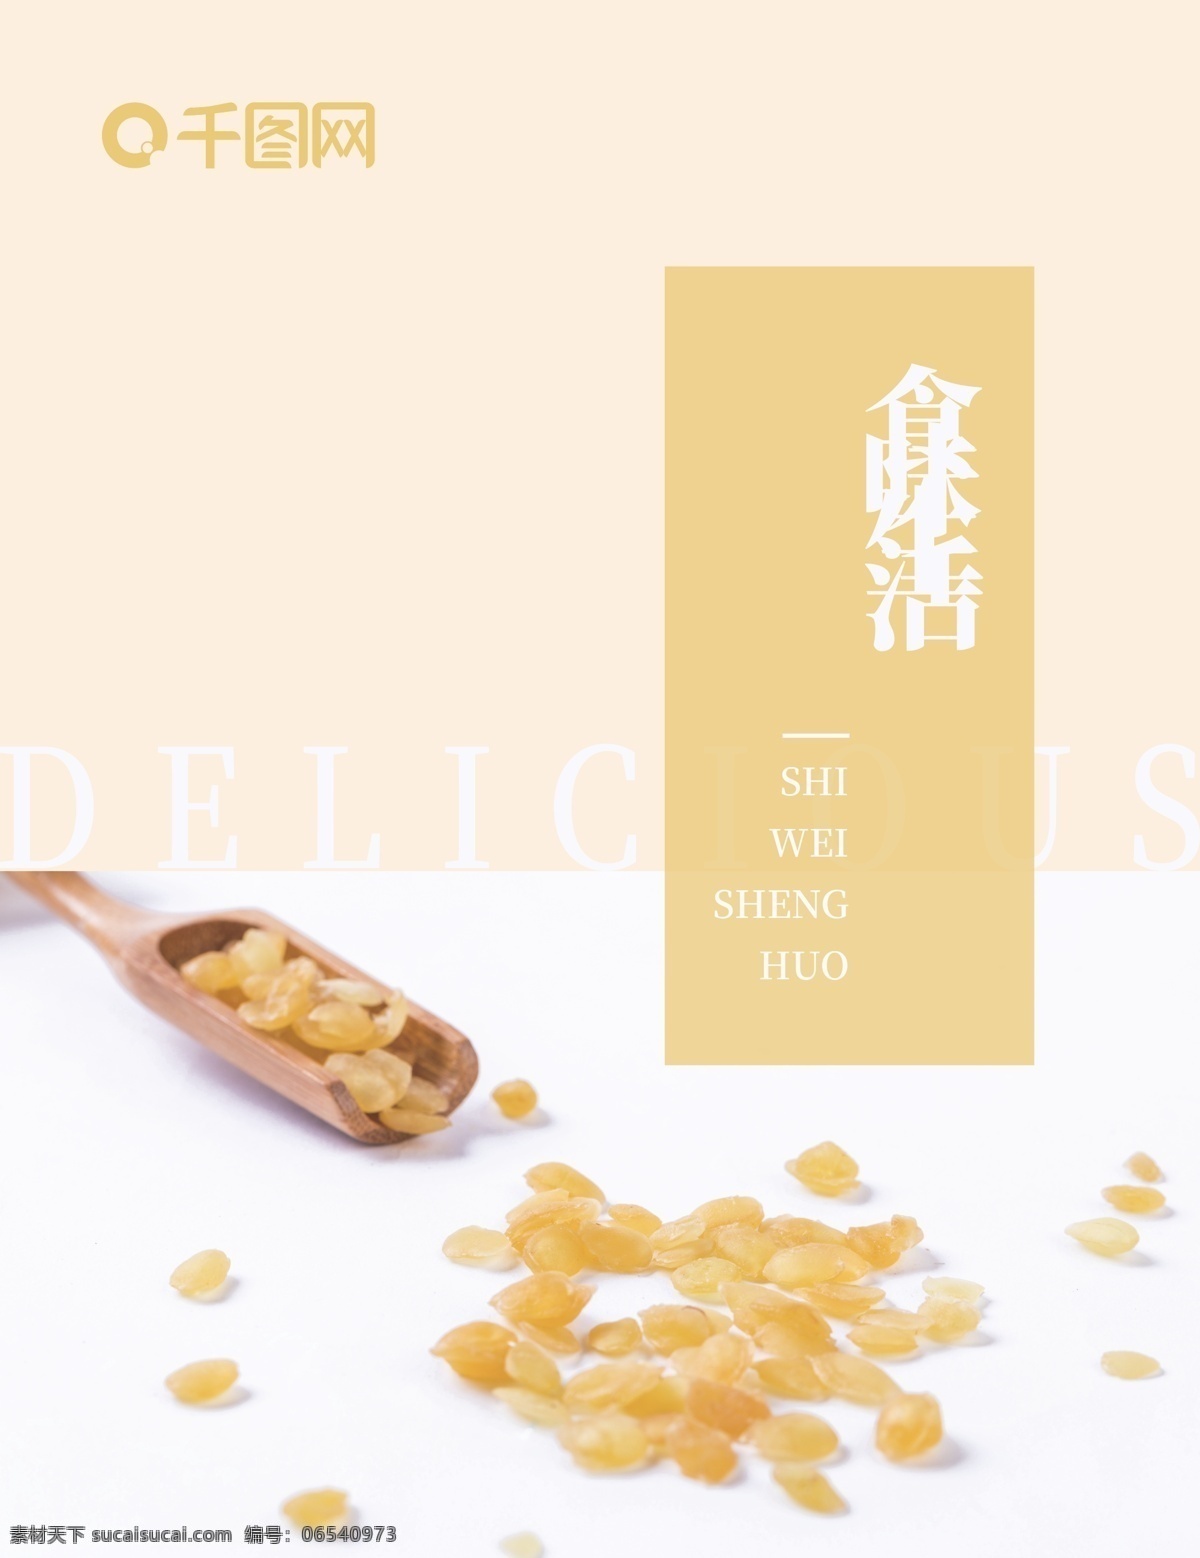 食味 生活 画册 封面 食味生活 美味 皂角米